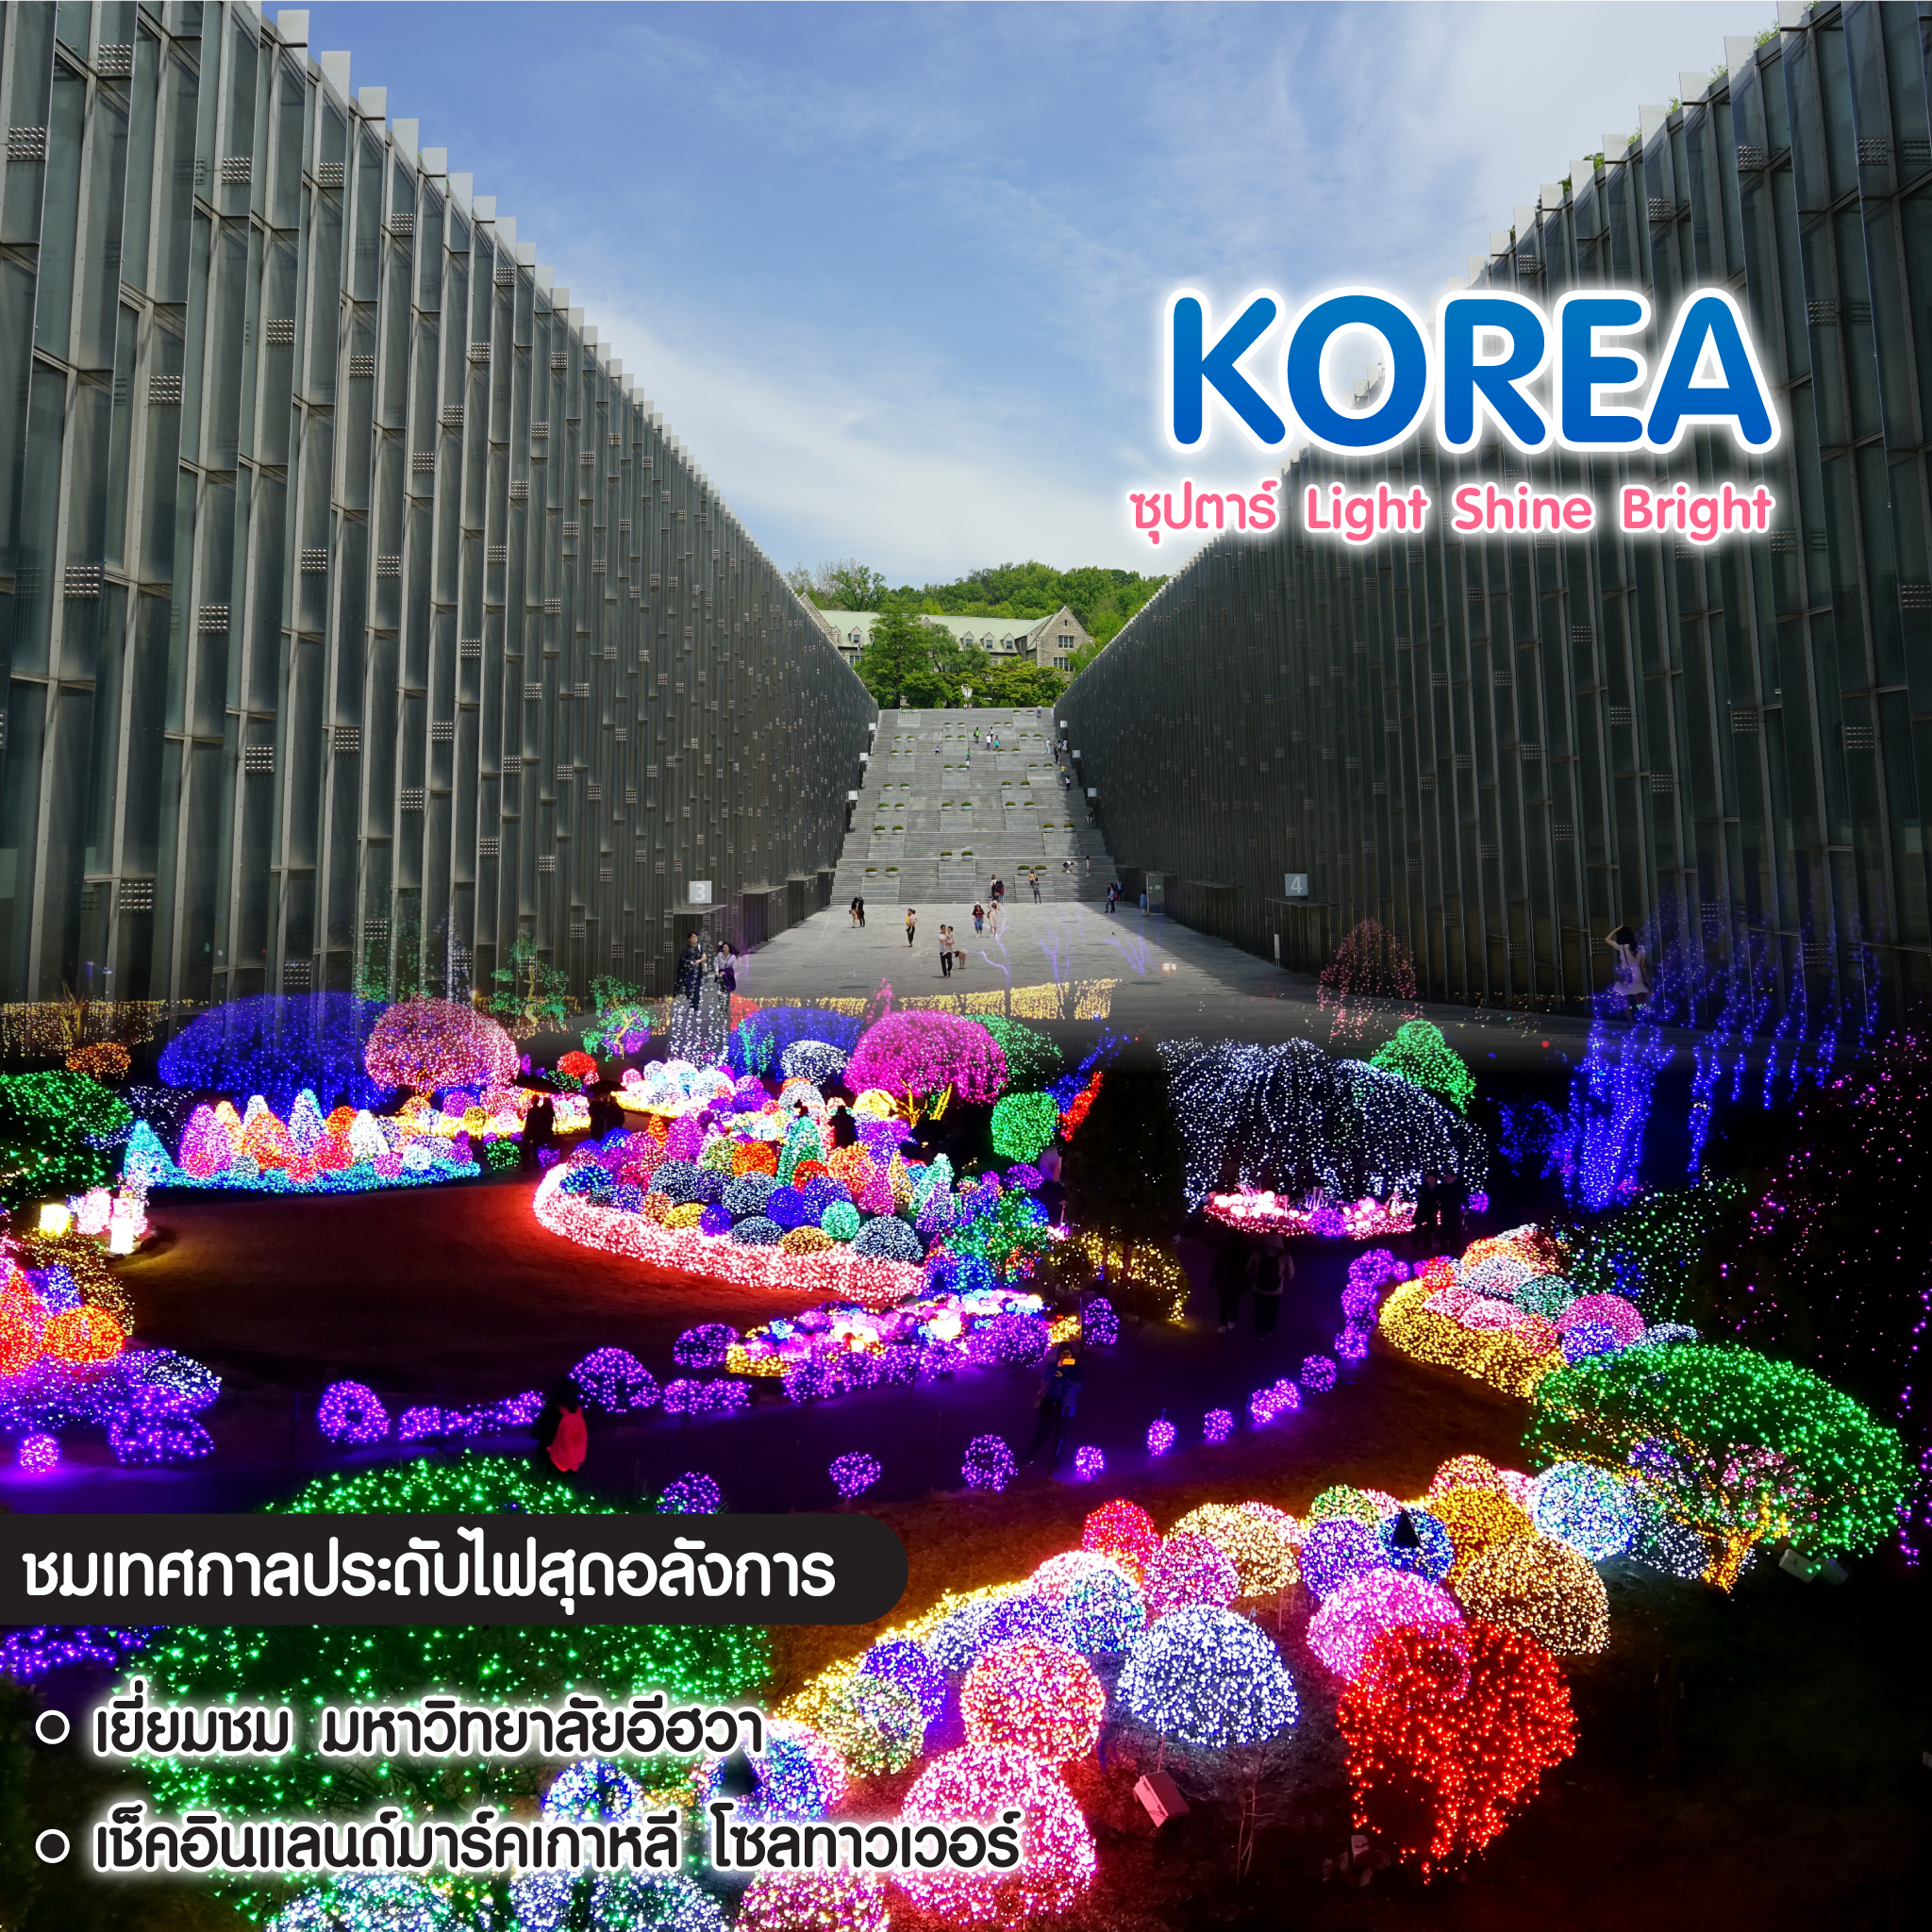 ทัวร์เกาหลี ซุปตาร์ Lights Shine Bright